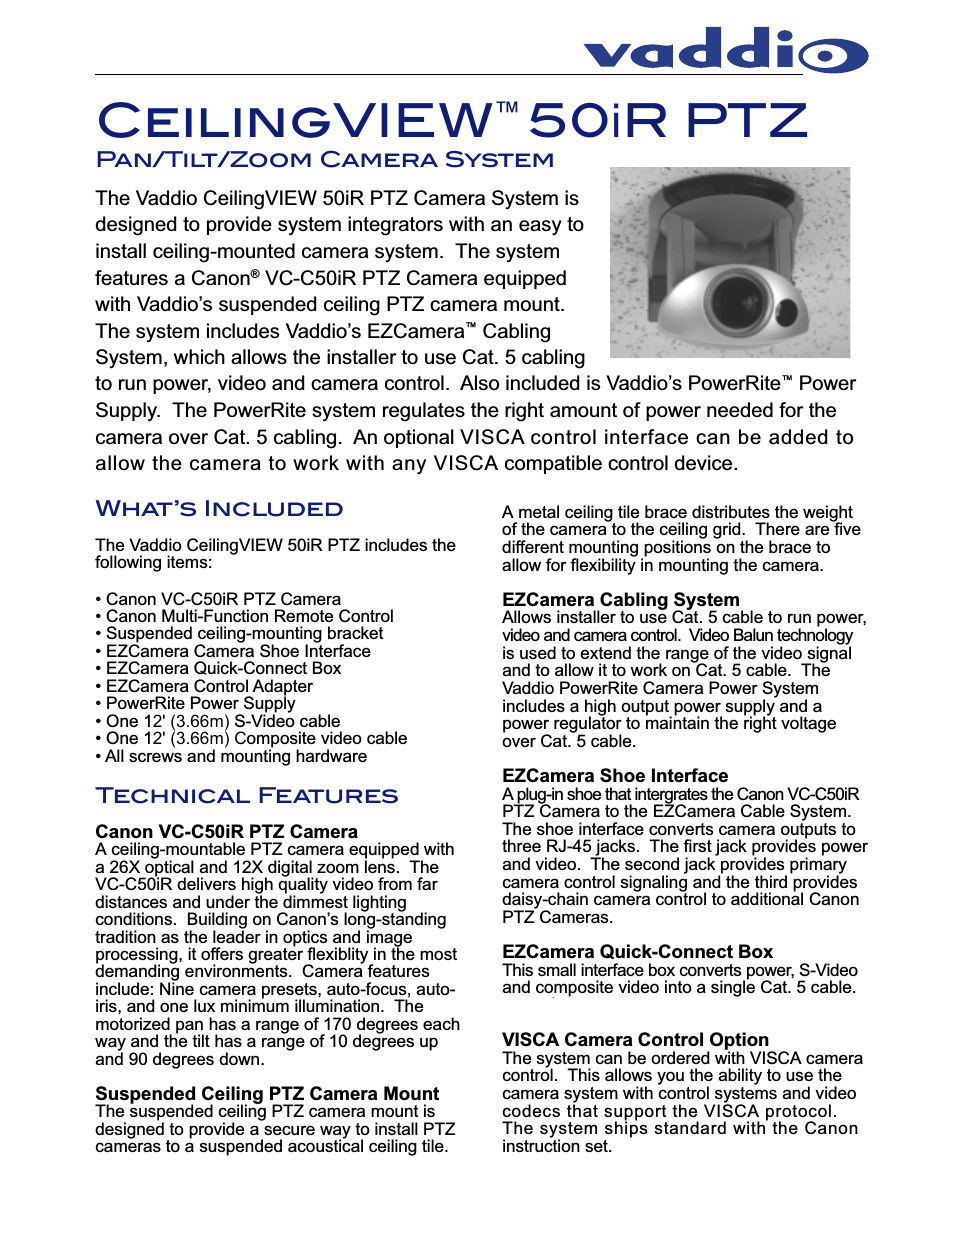 CeilingVIEW 50iR Tech Specs